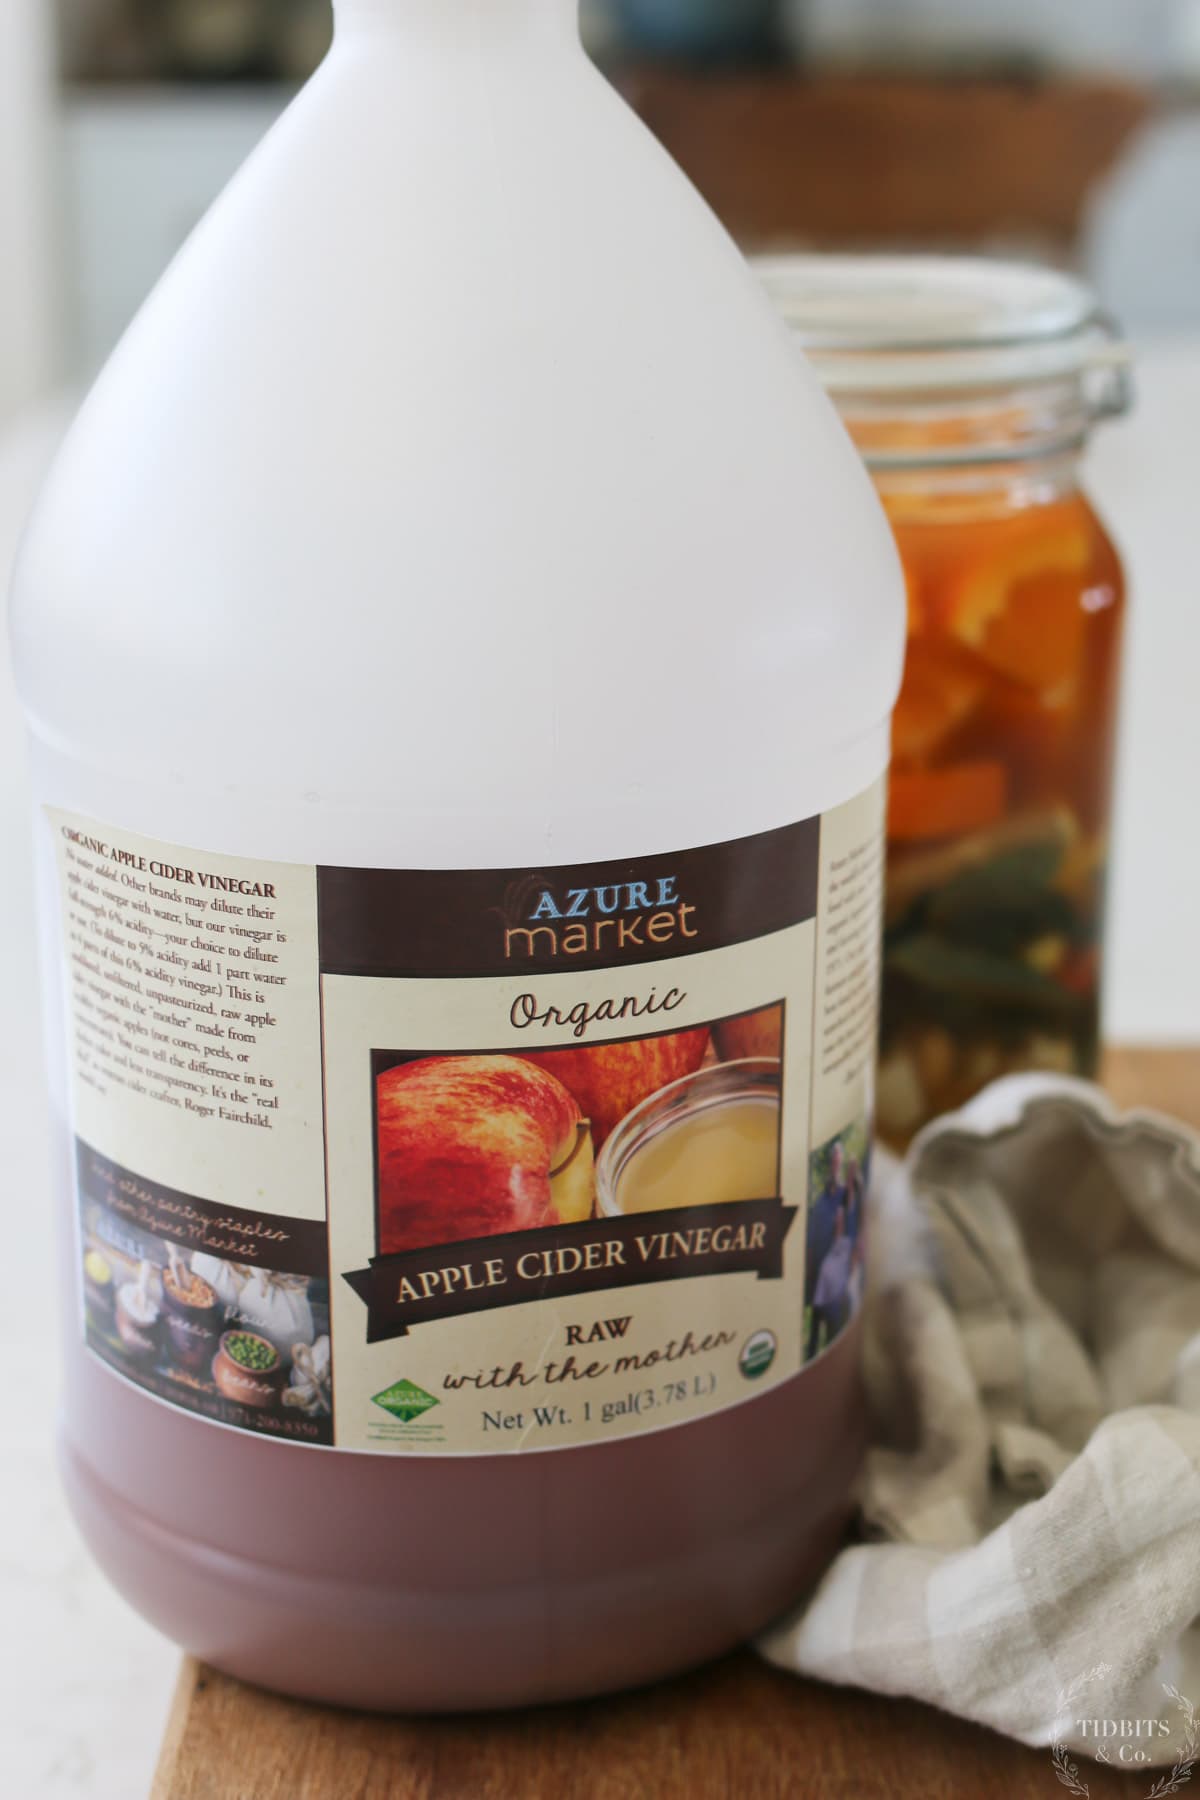 A jug of apple cider vinegar from Azure Standard